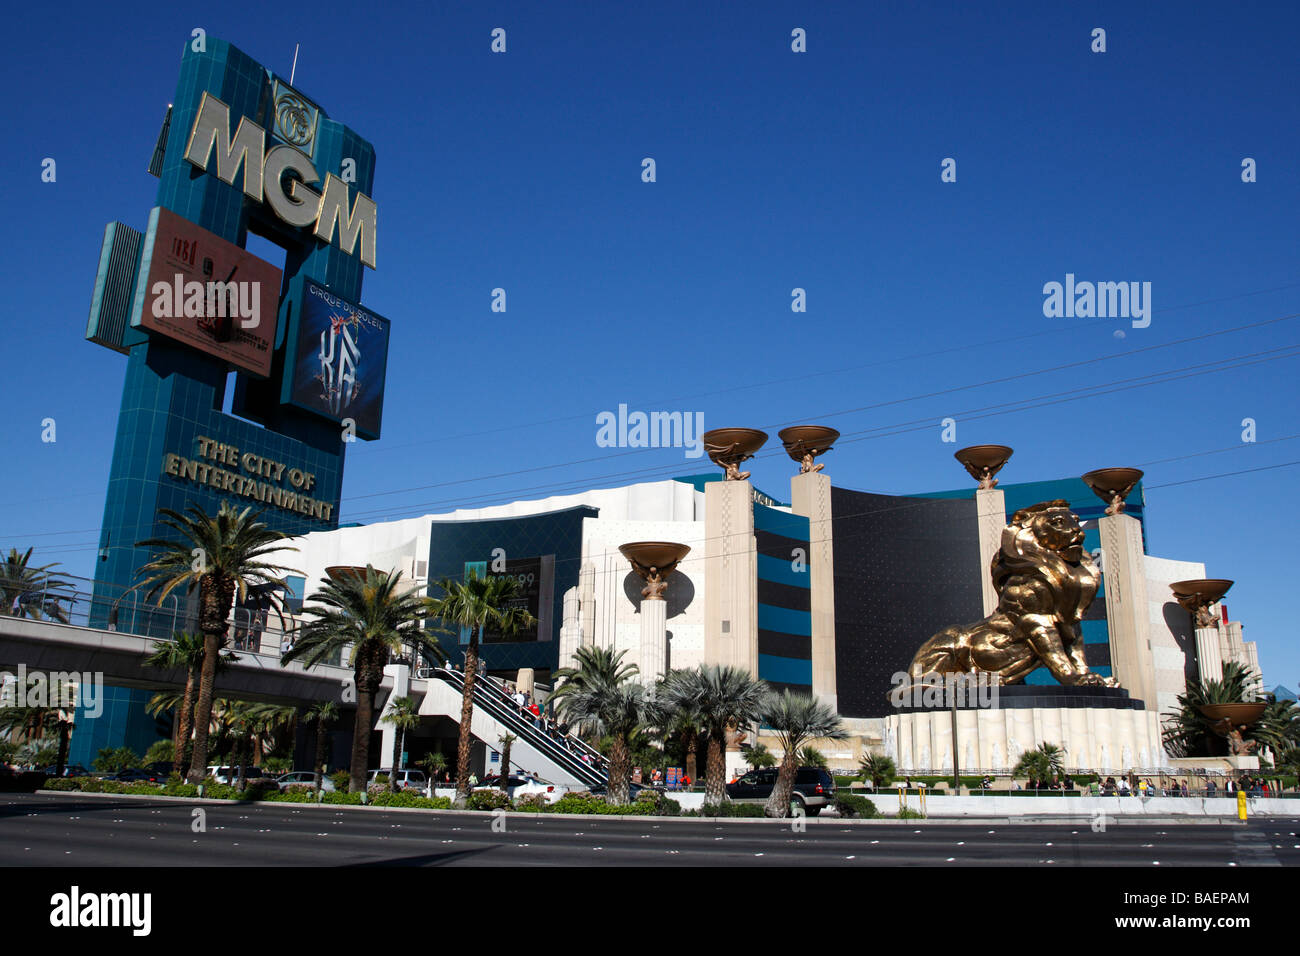 El MGM grand hotel y casino en la esquina de Tropicana Avenue y Las Vegas Boulevard Las Vegas Nevada EE.UU. Foto de stock